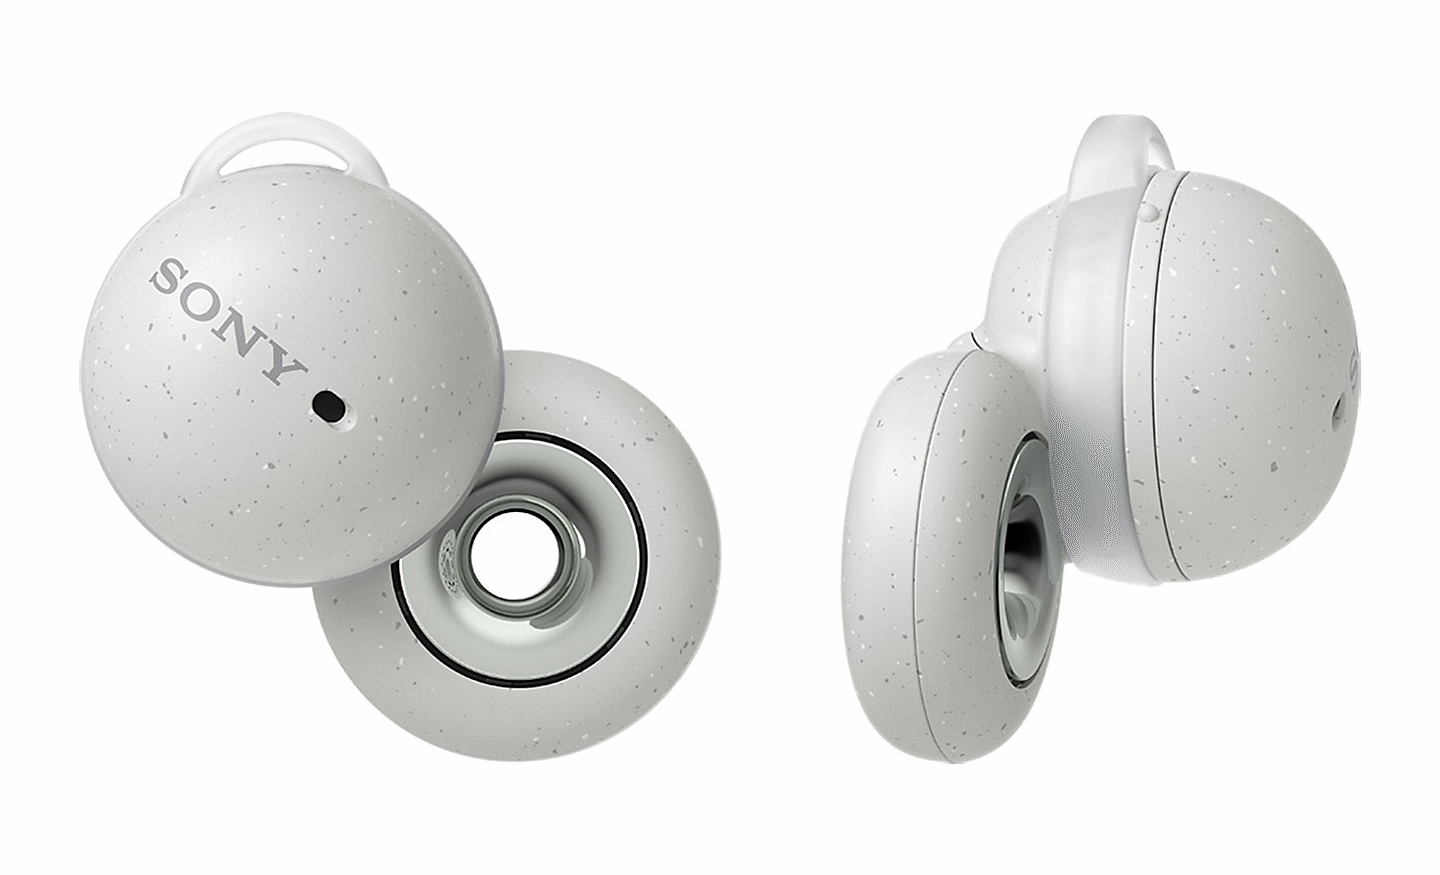 Imagem dos auriculares Sony LinkBuds brancos. Imagem da parte de trás de um auricular, imagem lateral do outro